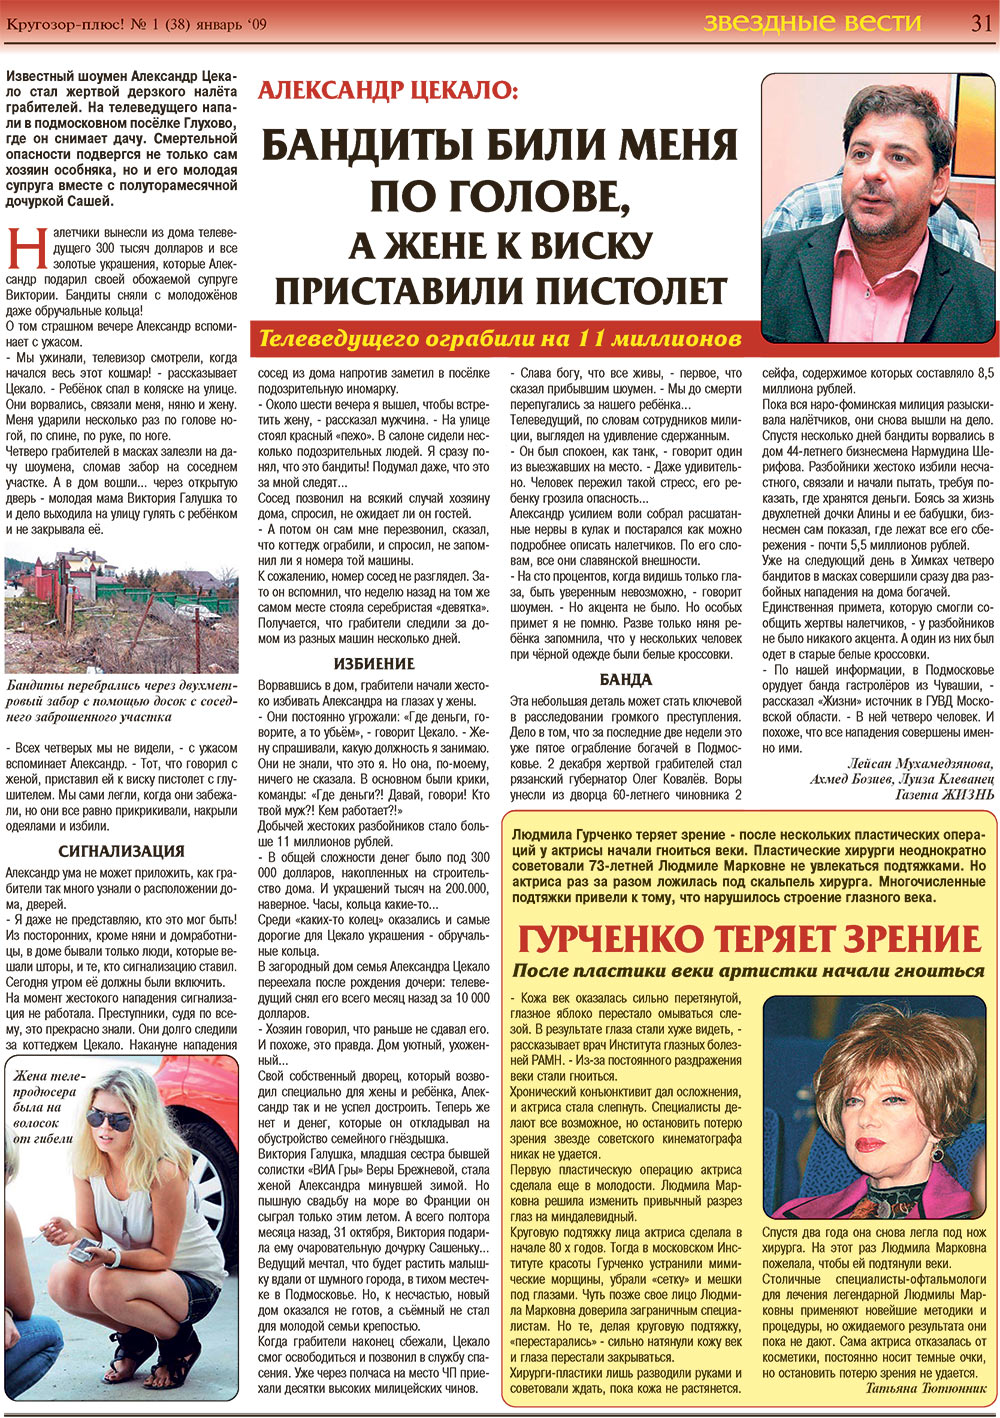 Кругозор плюс!, газета. 2009 №1 стр.31